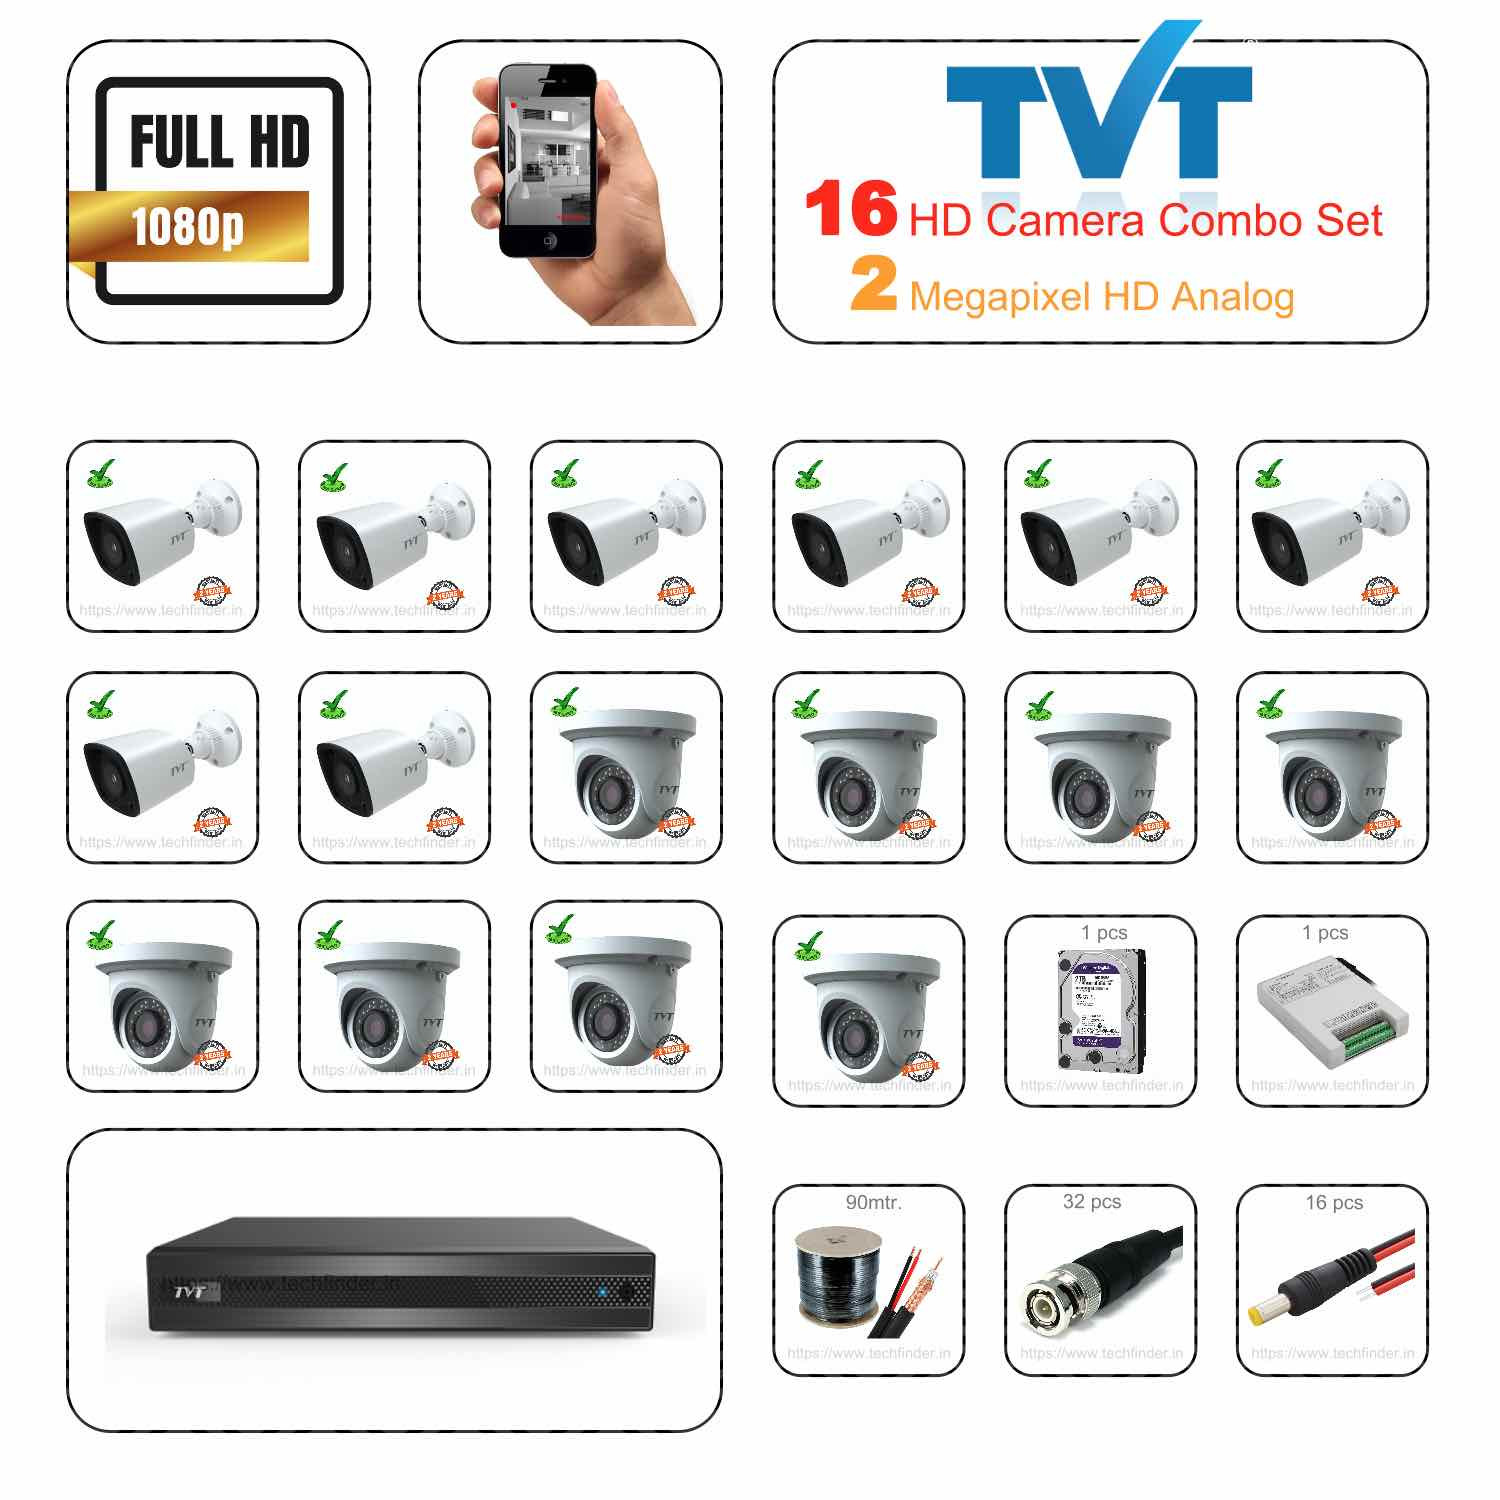 TVT HD 16 Camera Set Combo Kit